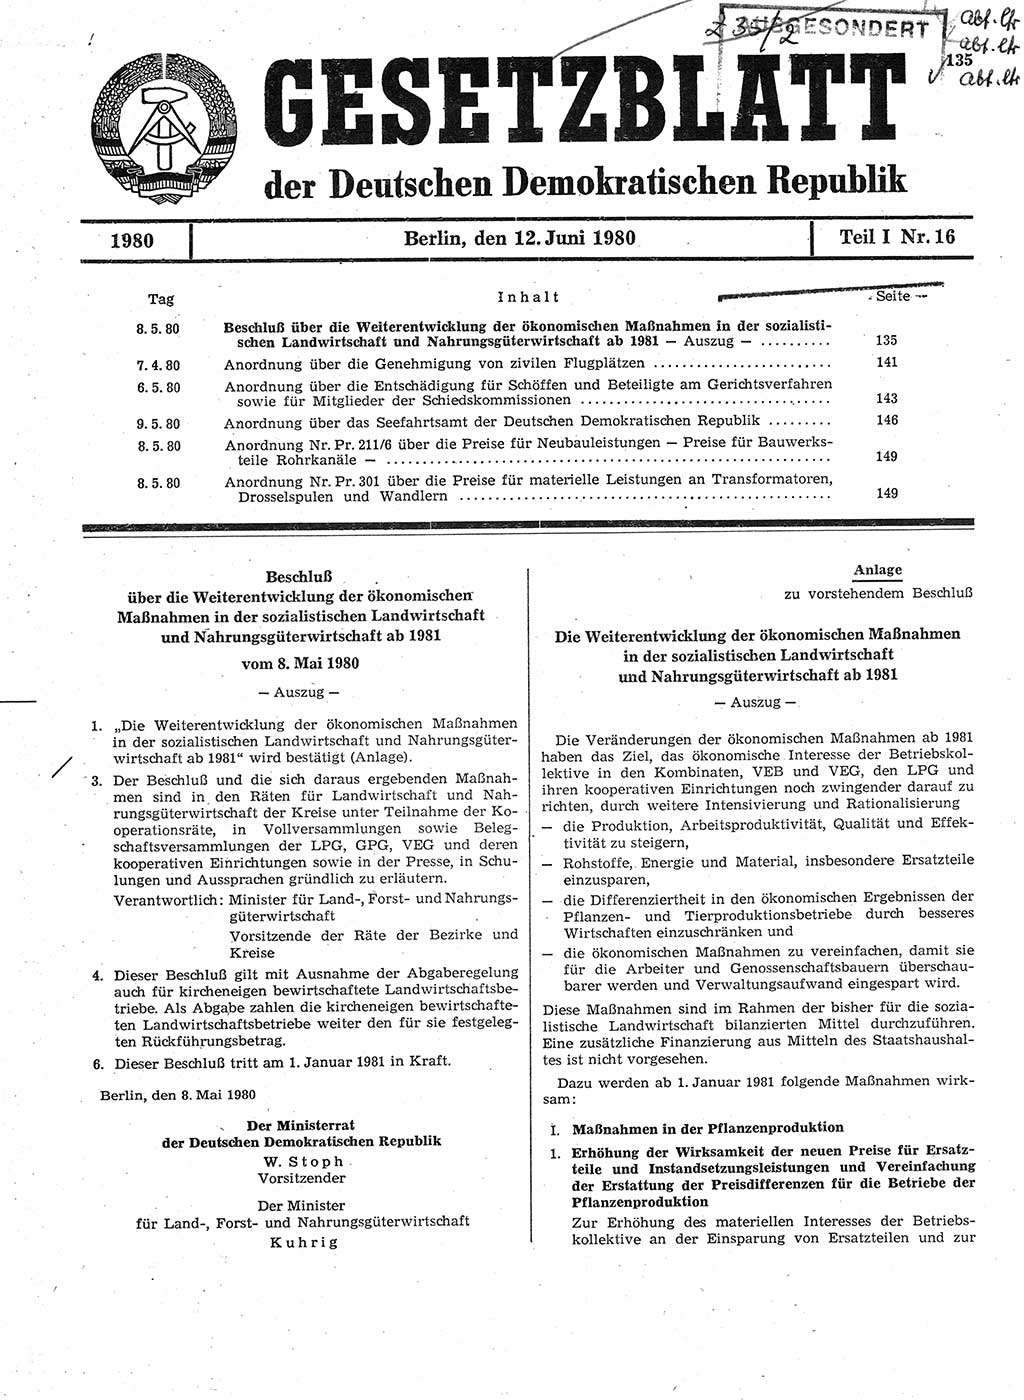 Gesetzblatt (GBl.) der Deutschen Demokratischen Republik (DDR) Teil Ⅰ 1980, Seite 135 (GBl. DDR Ⅰ 1980, S. 135)